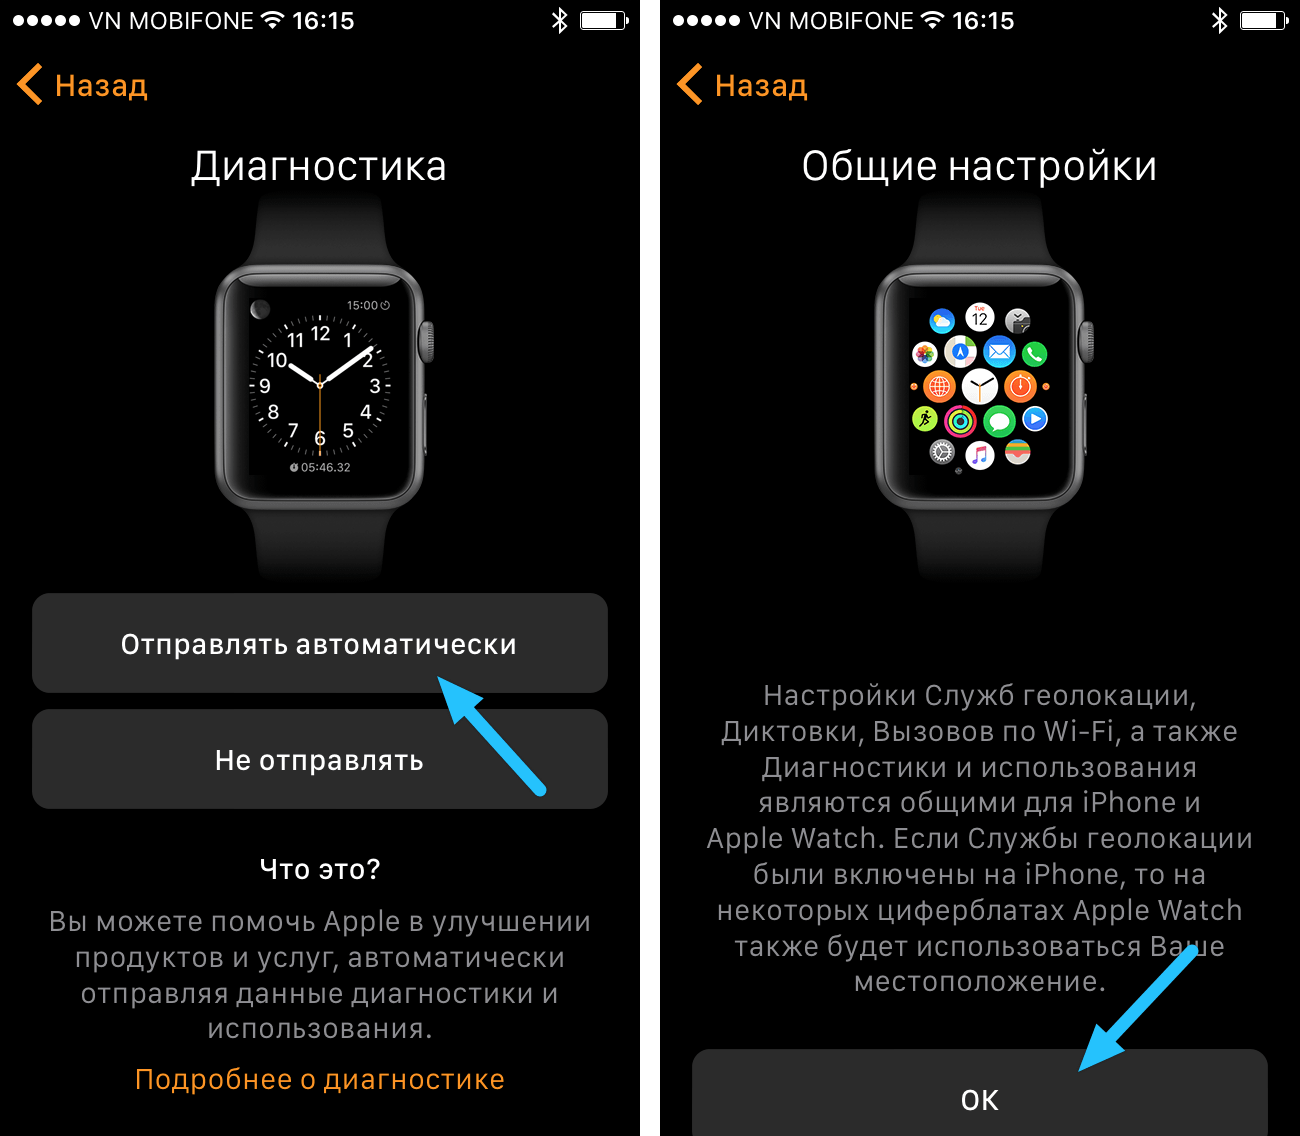 Как установить контакты на часах. К 6 айфону подключается эпл вотч. Как подключить часы Apple watch. Как подключить Apple watch к телефону. Параметры Apple watch.